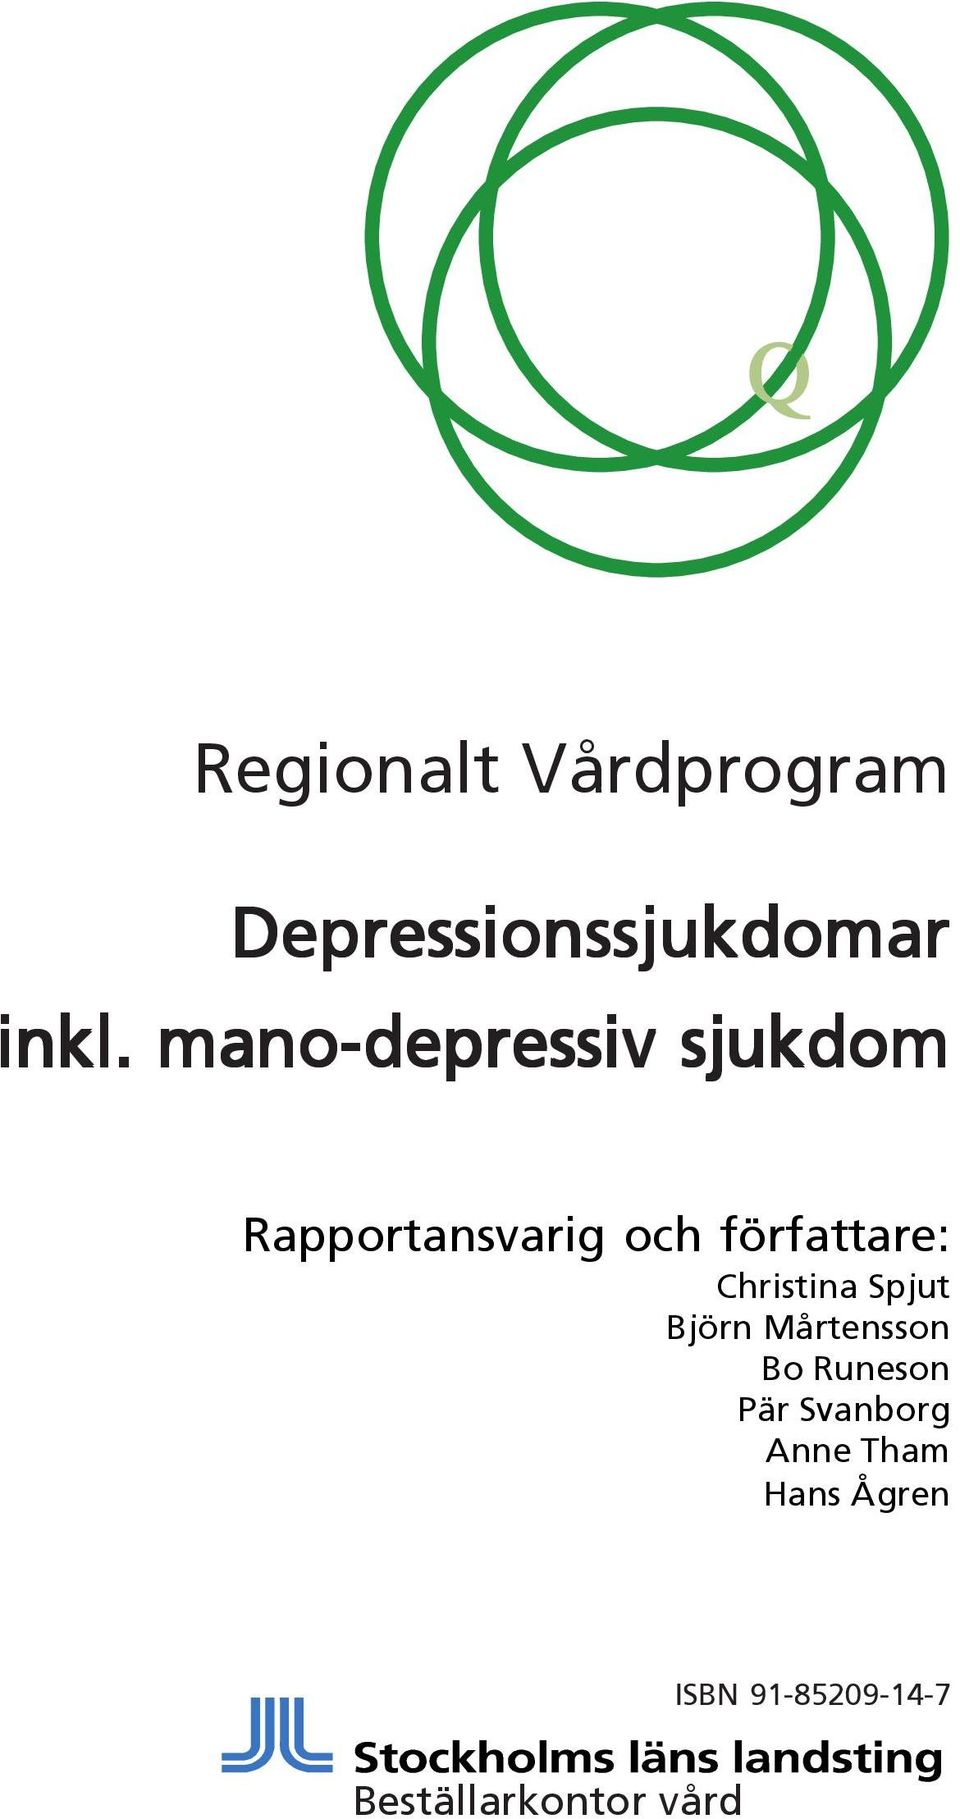 Christina Spjut Björn Mårtensson Bo Runeson Pär